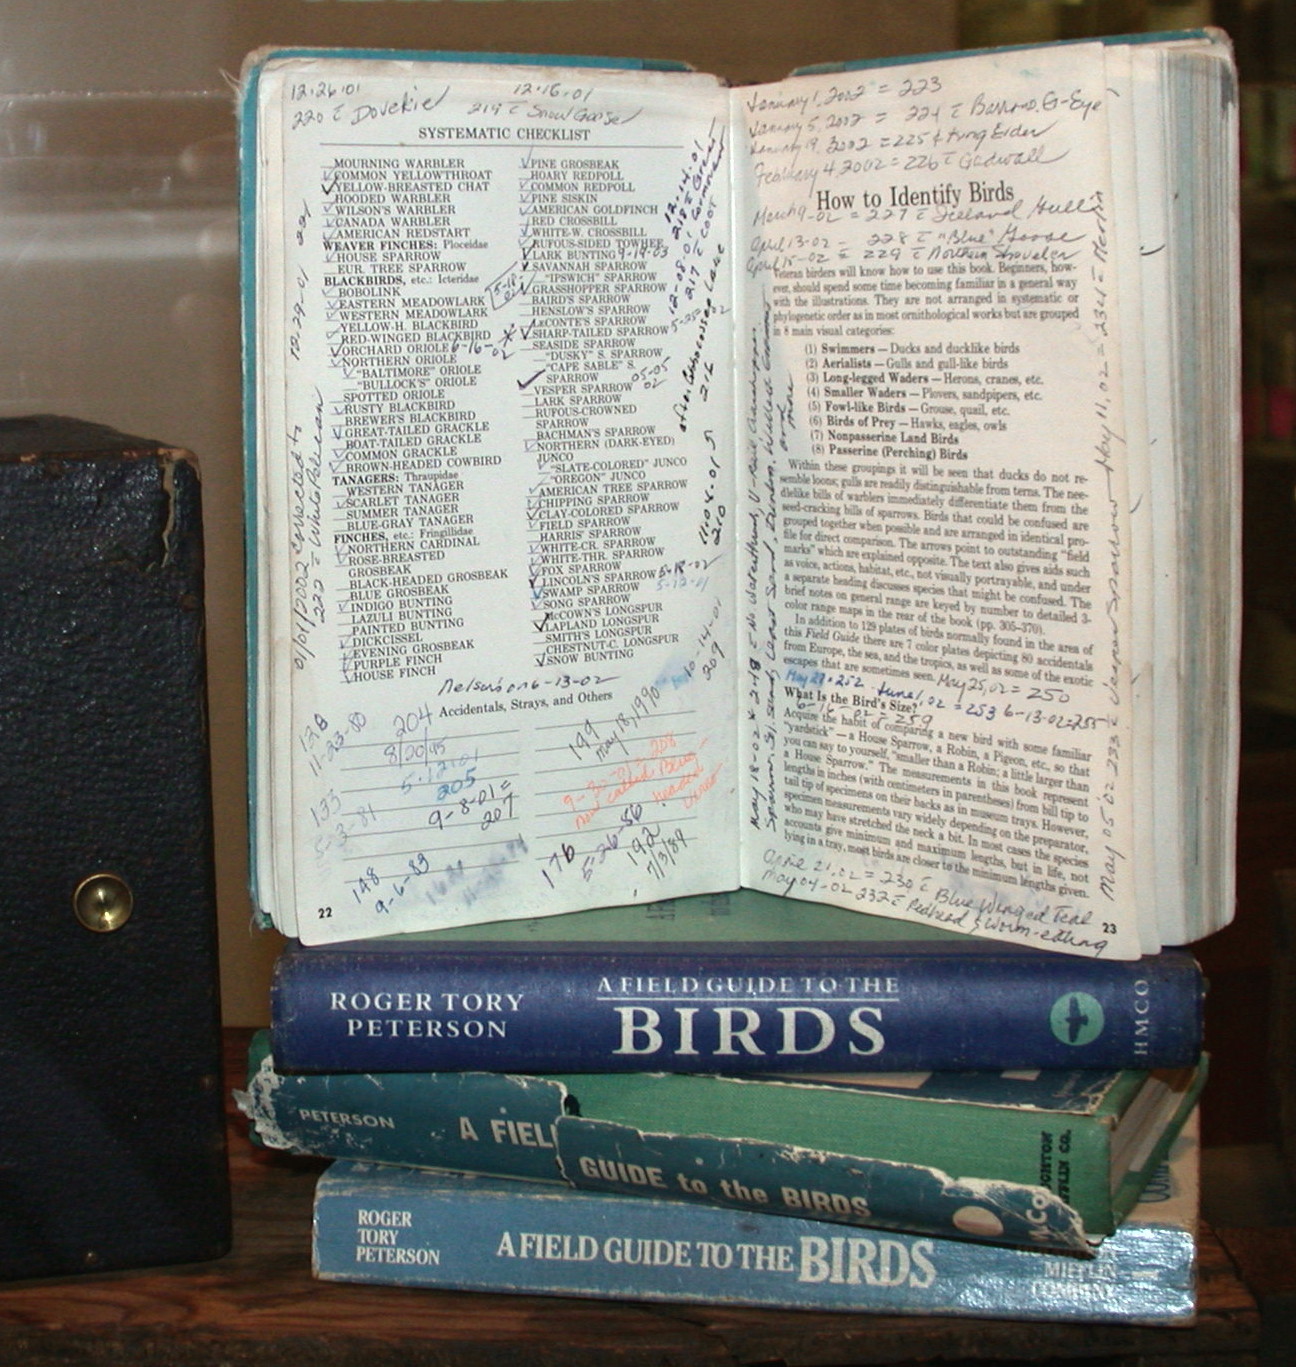 Open bird book showing handwritten entries for life list